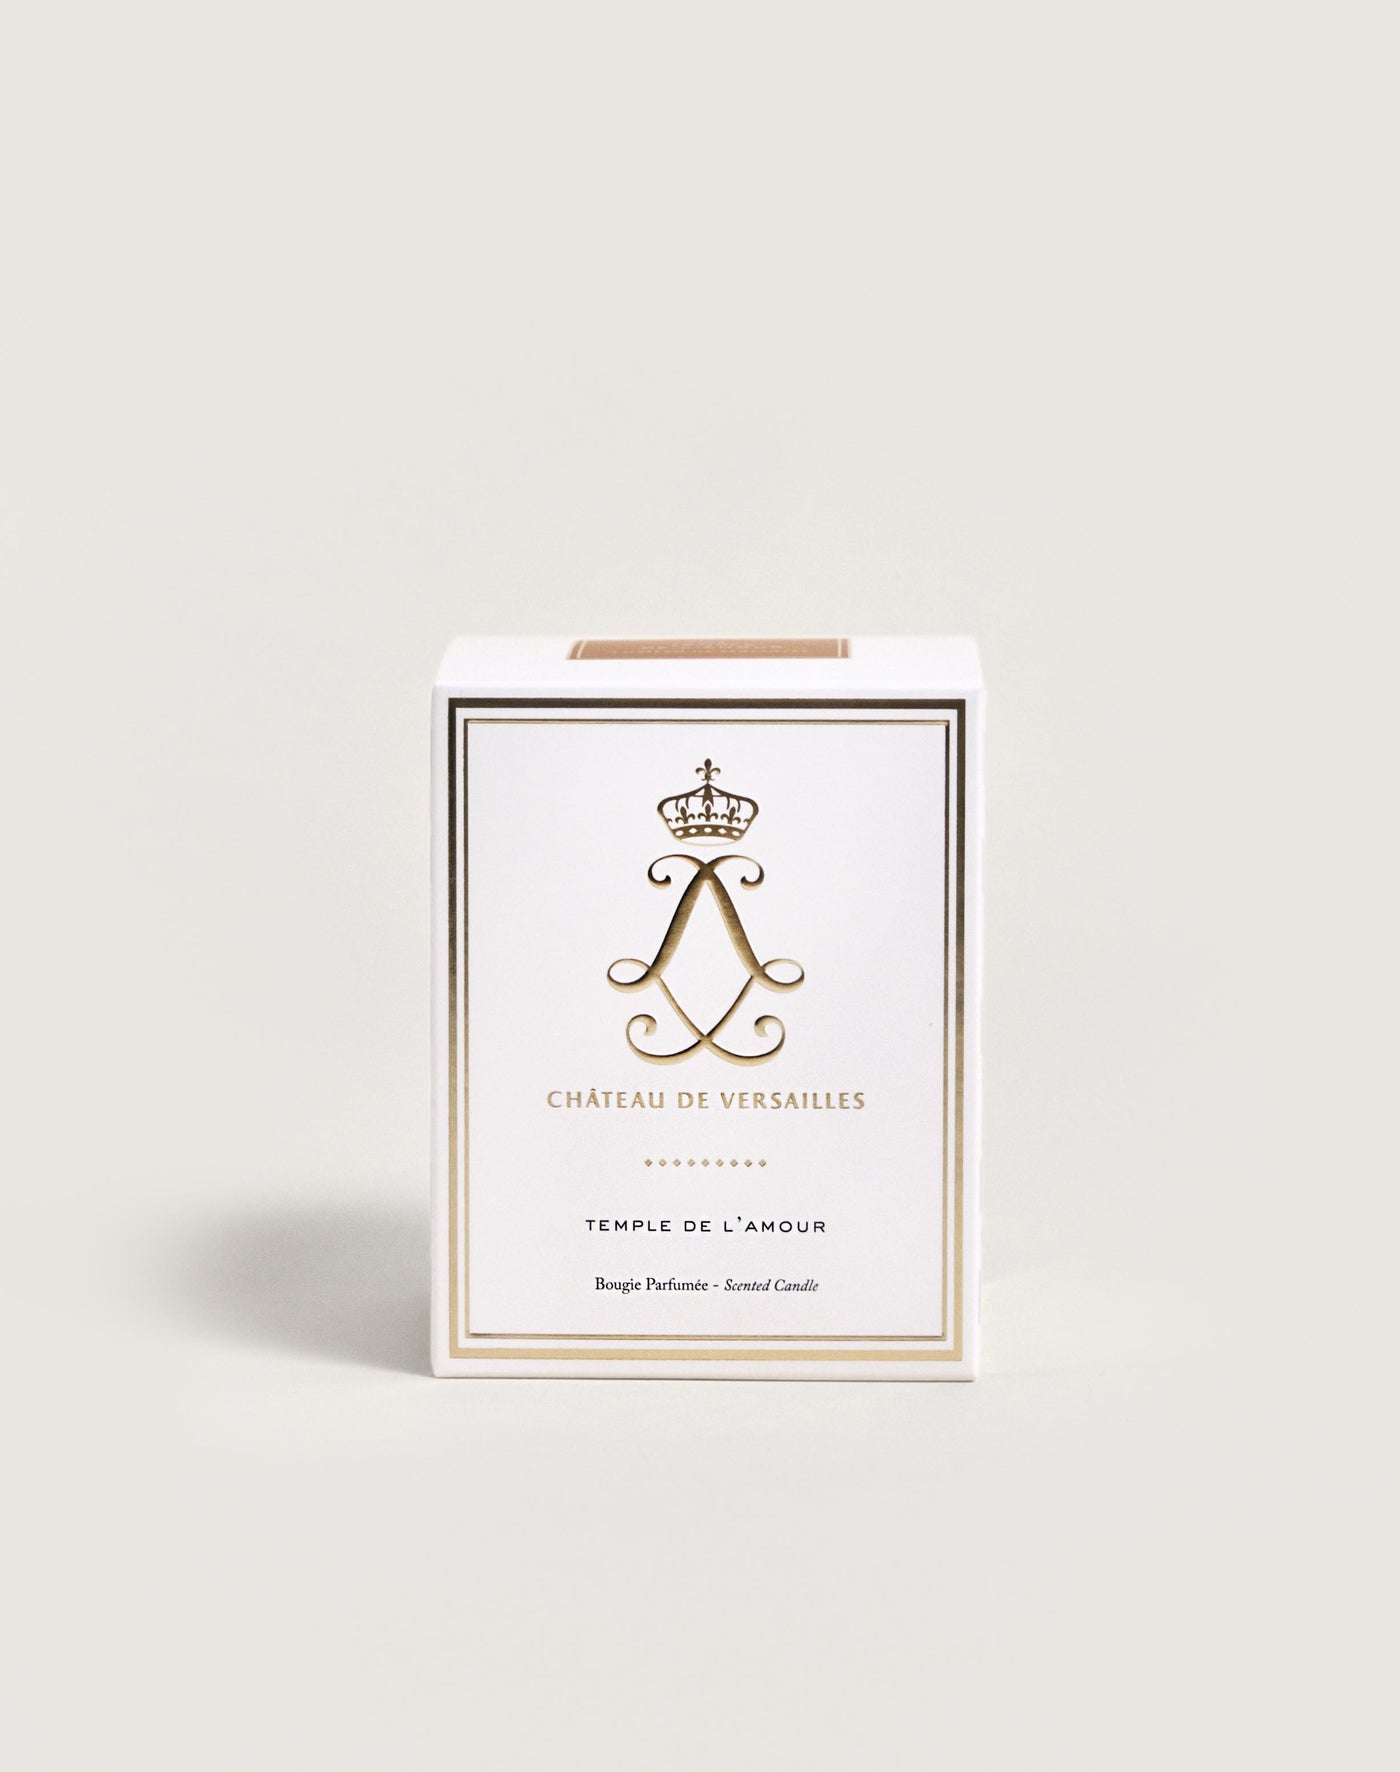 Bougie parfumée Château de Versailles® 40h Temple de l'Amour